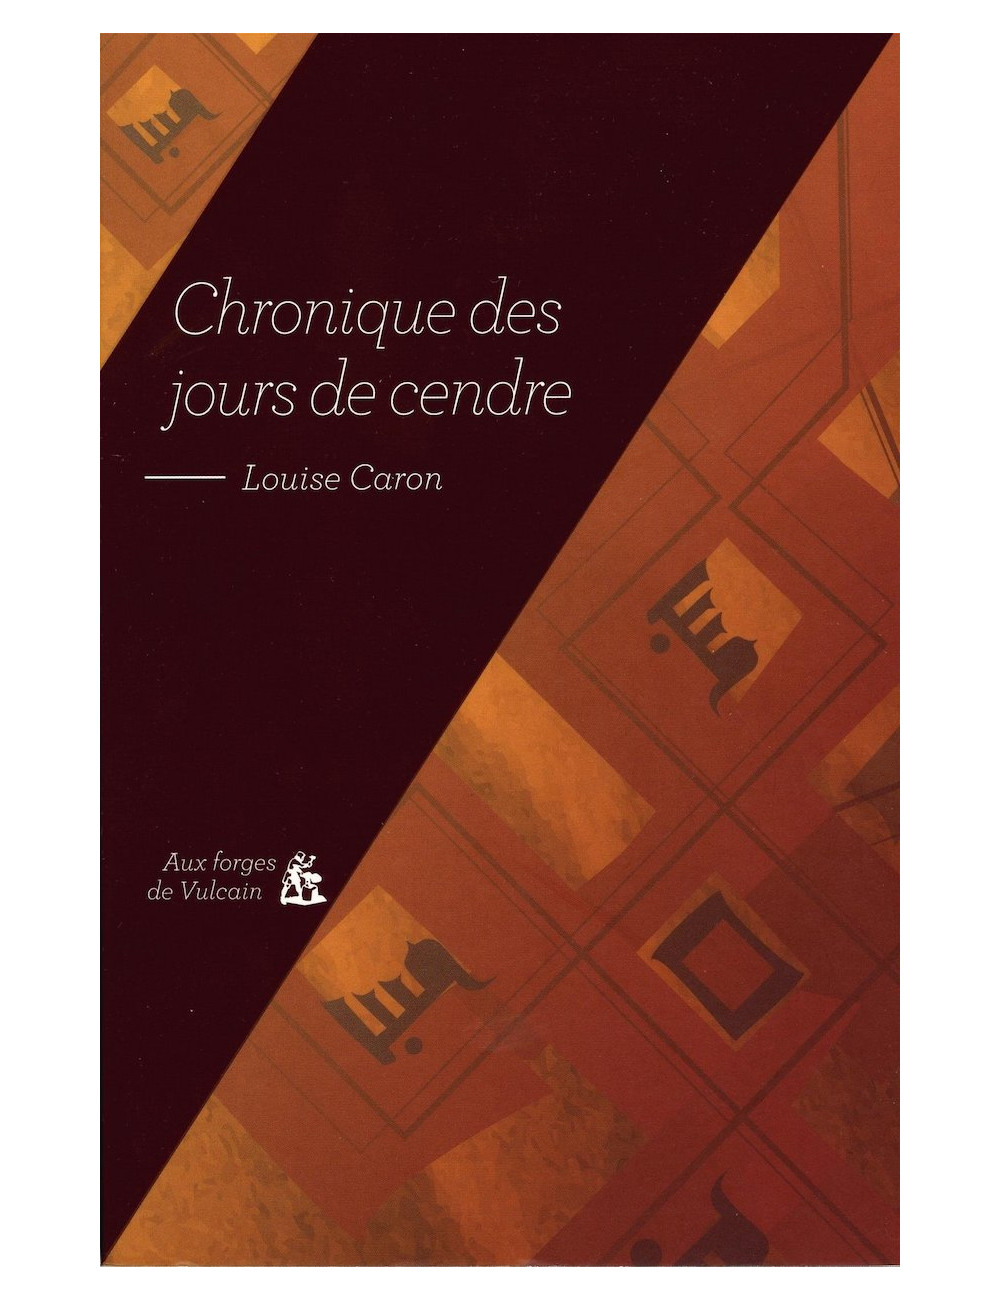 Le livre Chronique des jours de cendre de Louise Caron forges de vulcain